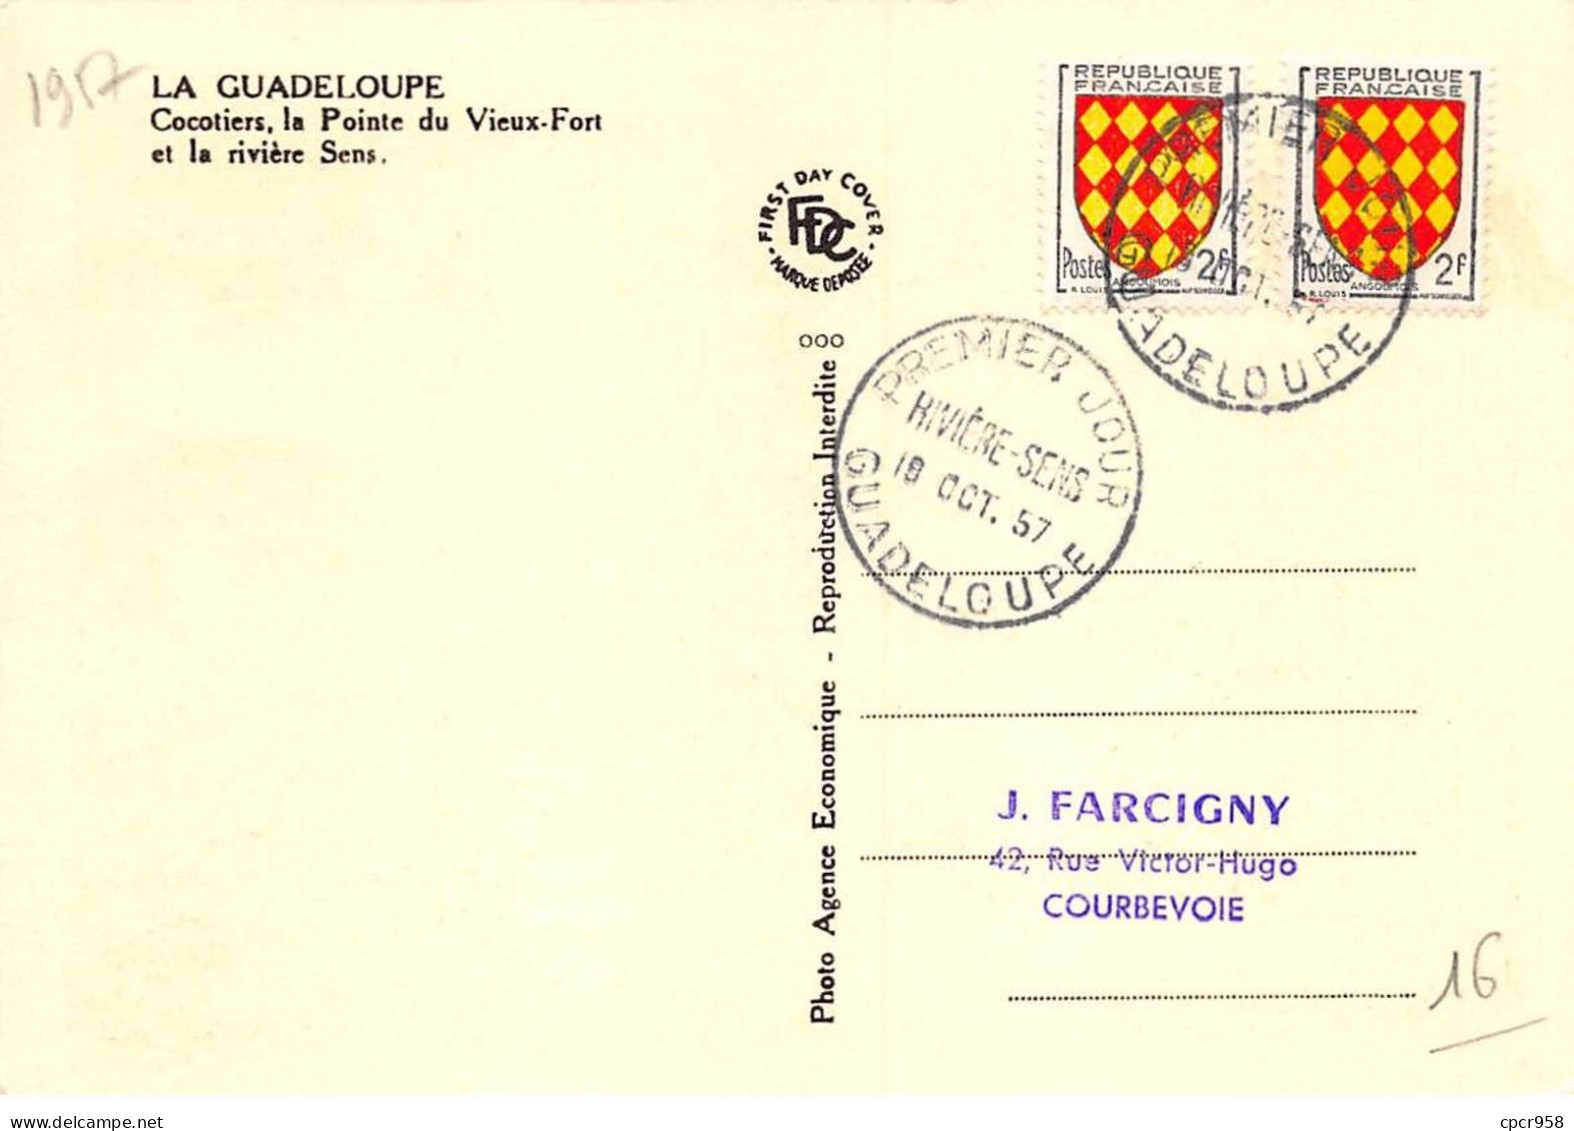 Carte Maximum - FRANCE - COR12630 - 19/10/1957 - Cocotiers, Pointe Du Vieux-Fort Et Rivière Sens - Cachet Guadeloupe - - 1950-1959